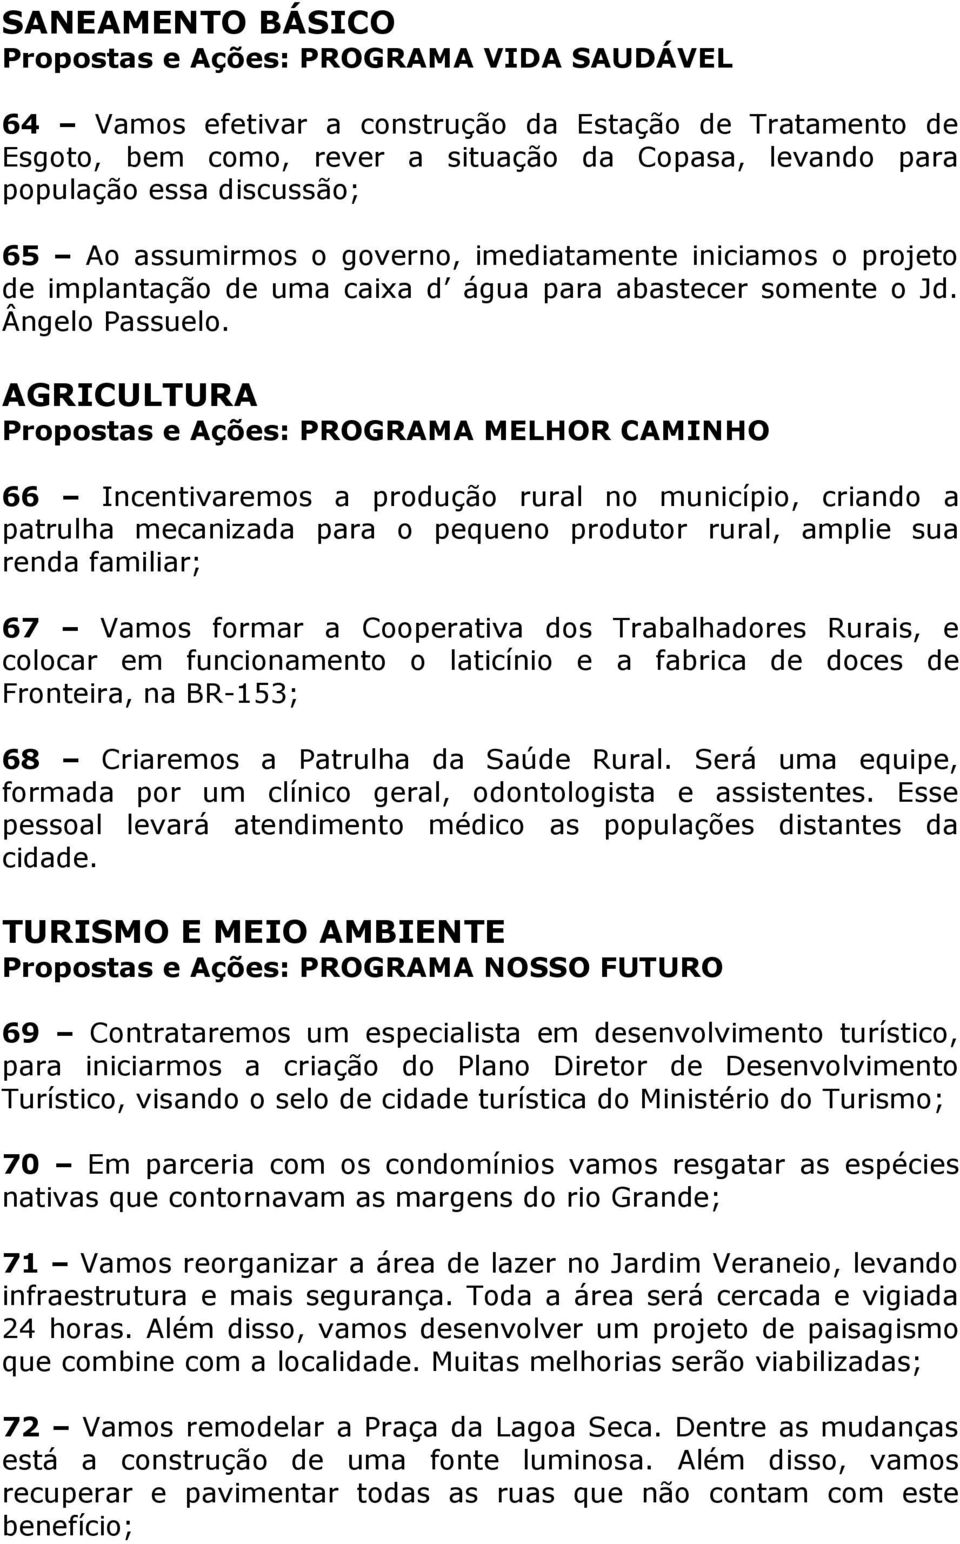 AGRICULTURA Propostas e Ações: PROGRAMA MELHOR CAMINHO 66 Incentivaremos a produção rural no município, criando a patrulha mecanizada para o pequeno produtor rural, amplie sua renda familiar; 67